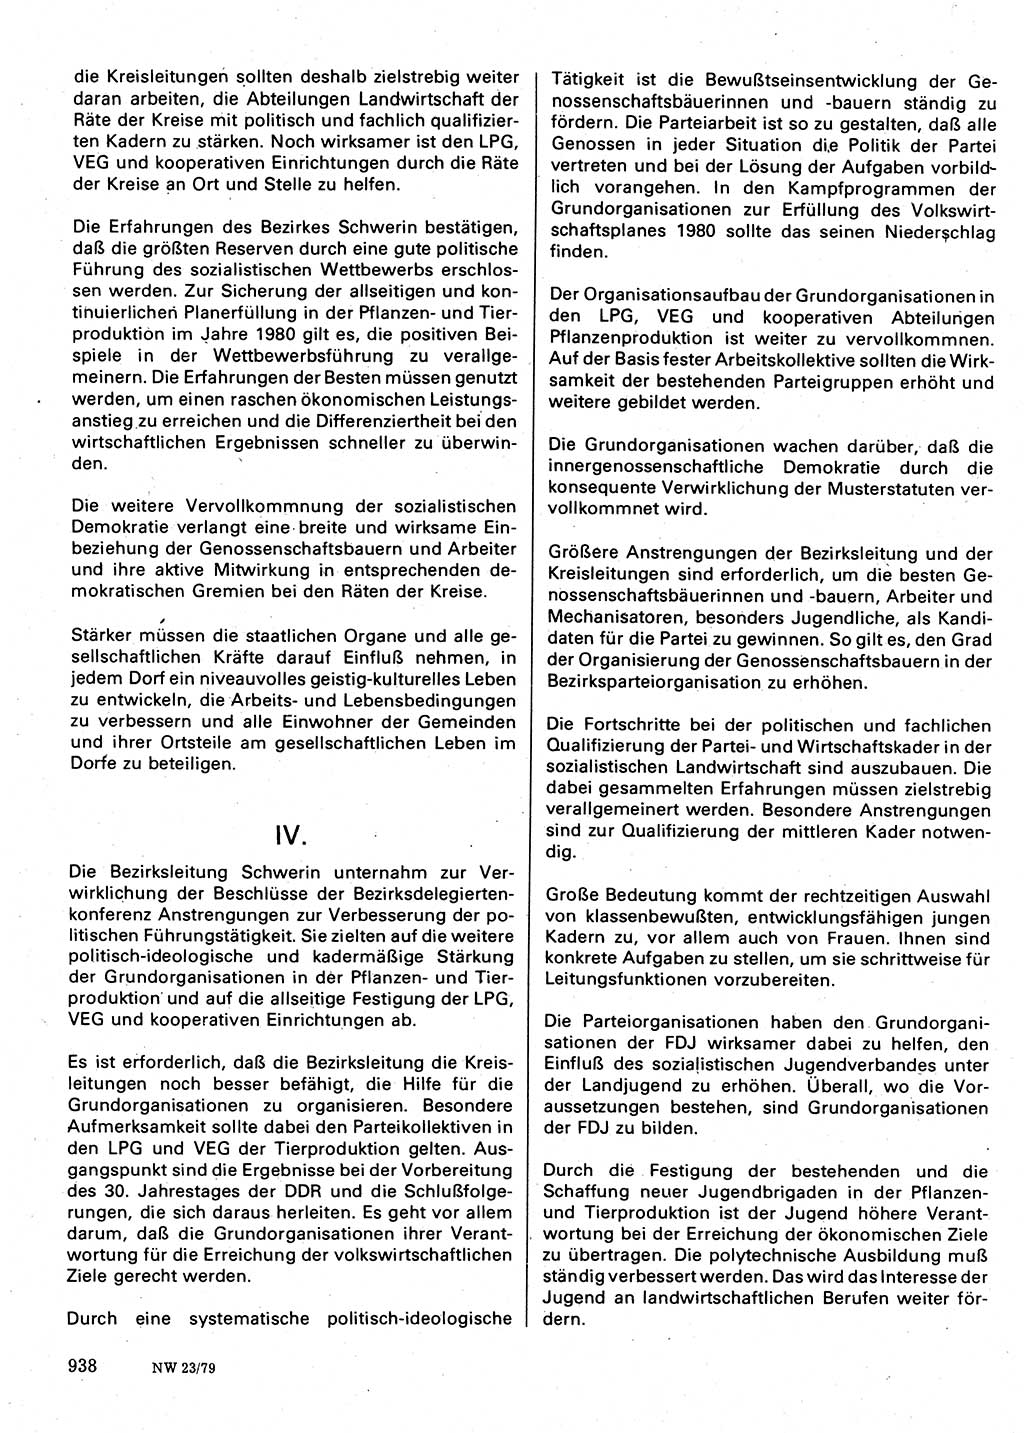 Neuer Weg (NW), Organ des Zentralkomitees (ZK) der SED (Sozialistische Einheitspartei Deutschlands) für Fragen des Parteilebens, 34. Jahrgang [Deutsche Demokratische Republik (DDR)] 1979, Seite 938 (NW ZK SED DDR 1979, S. 938)